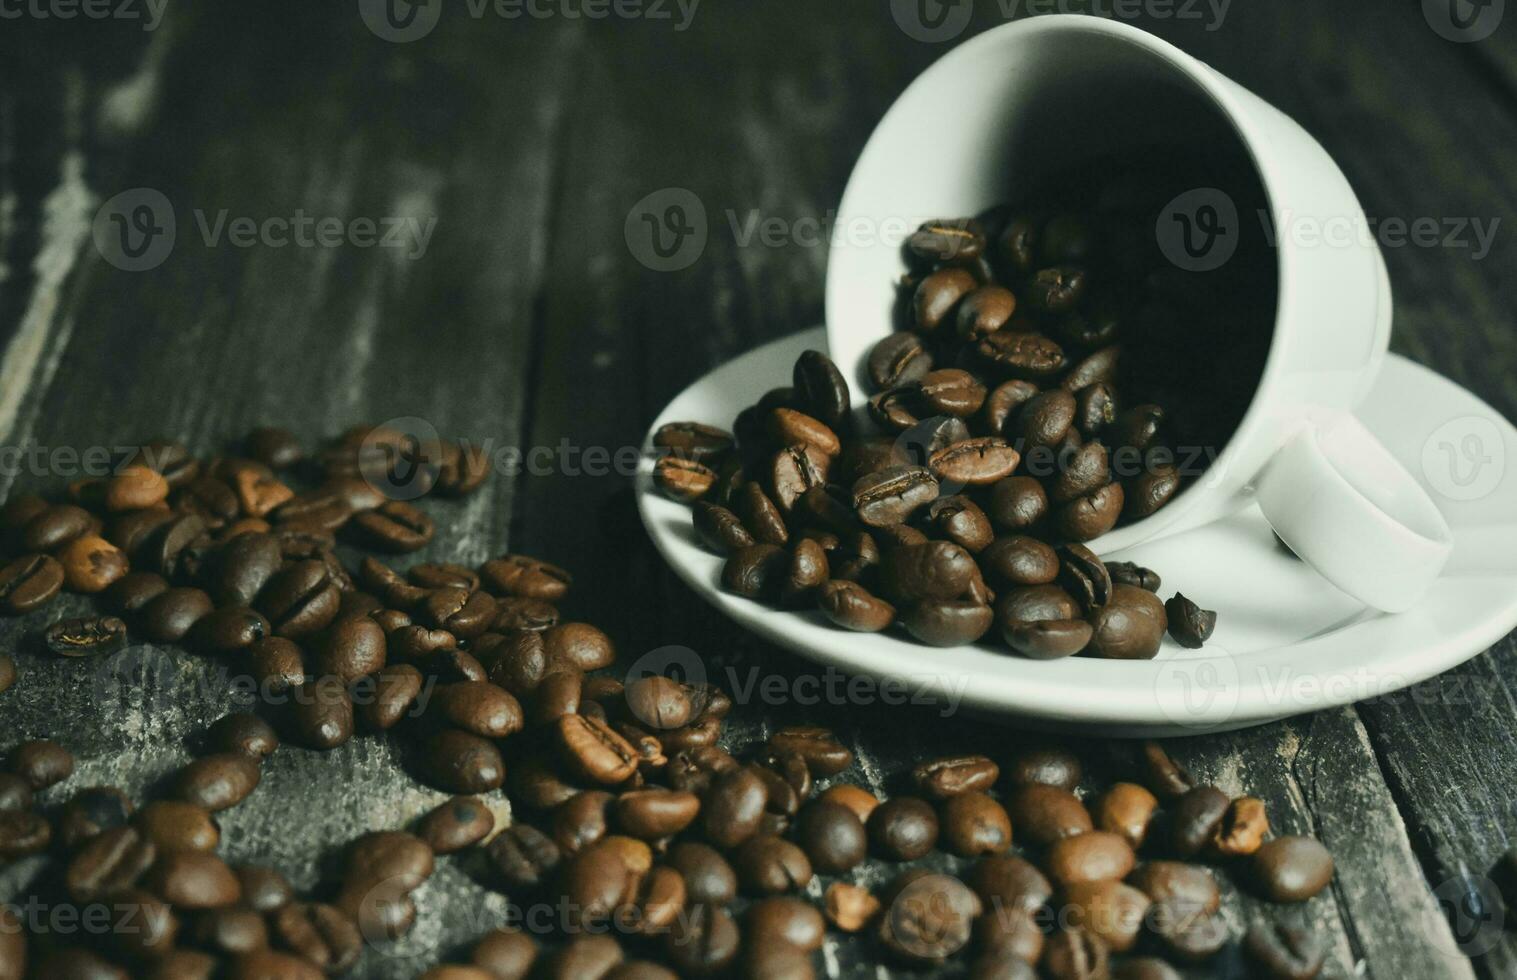 Kaffeebohnen auf Holztisch foto